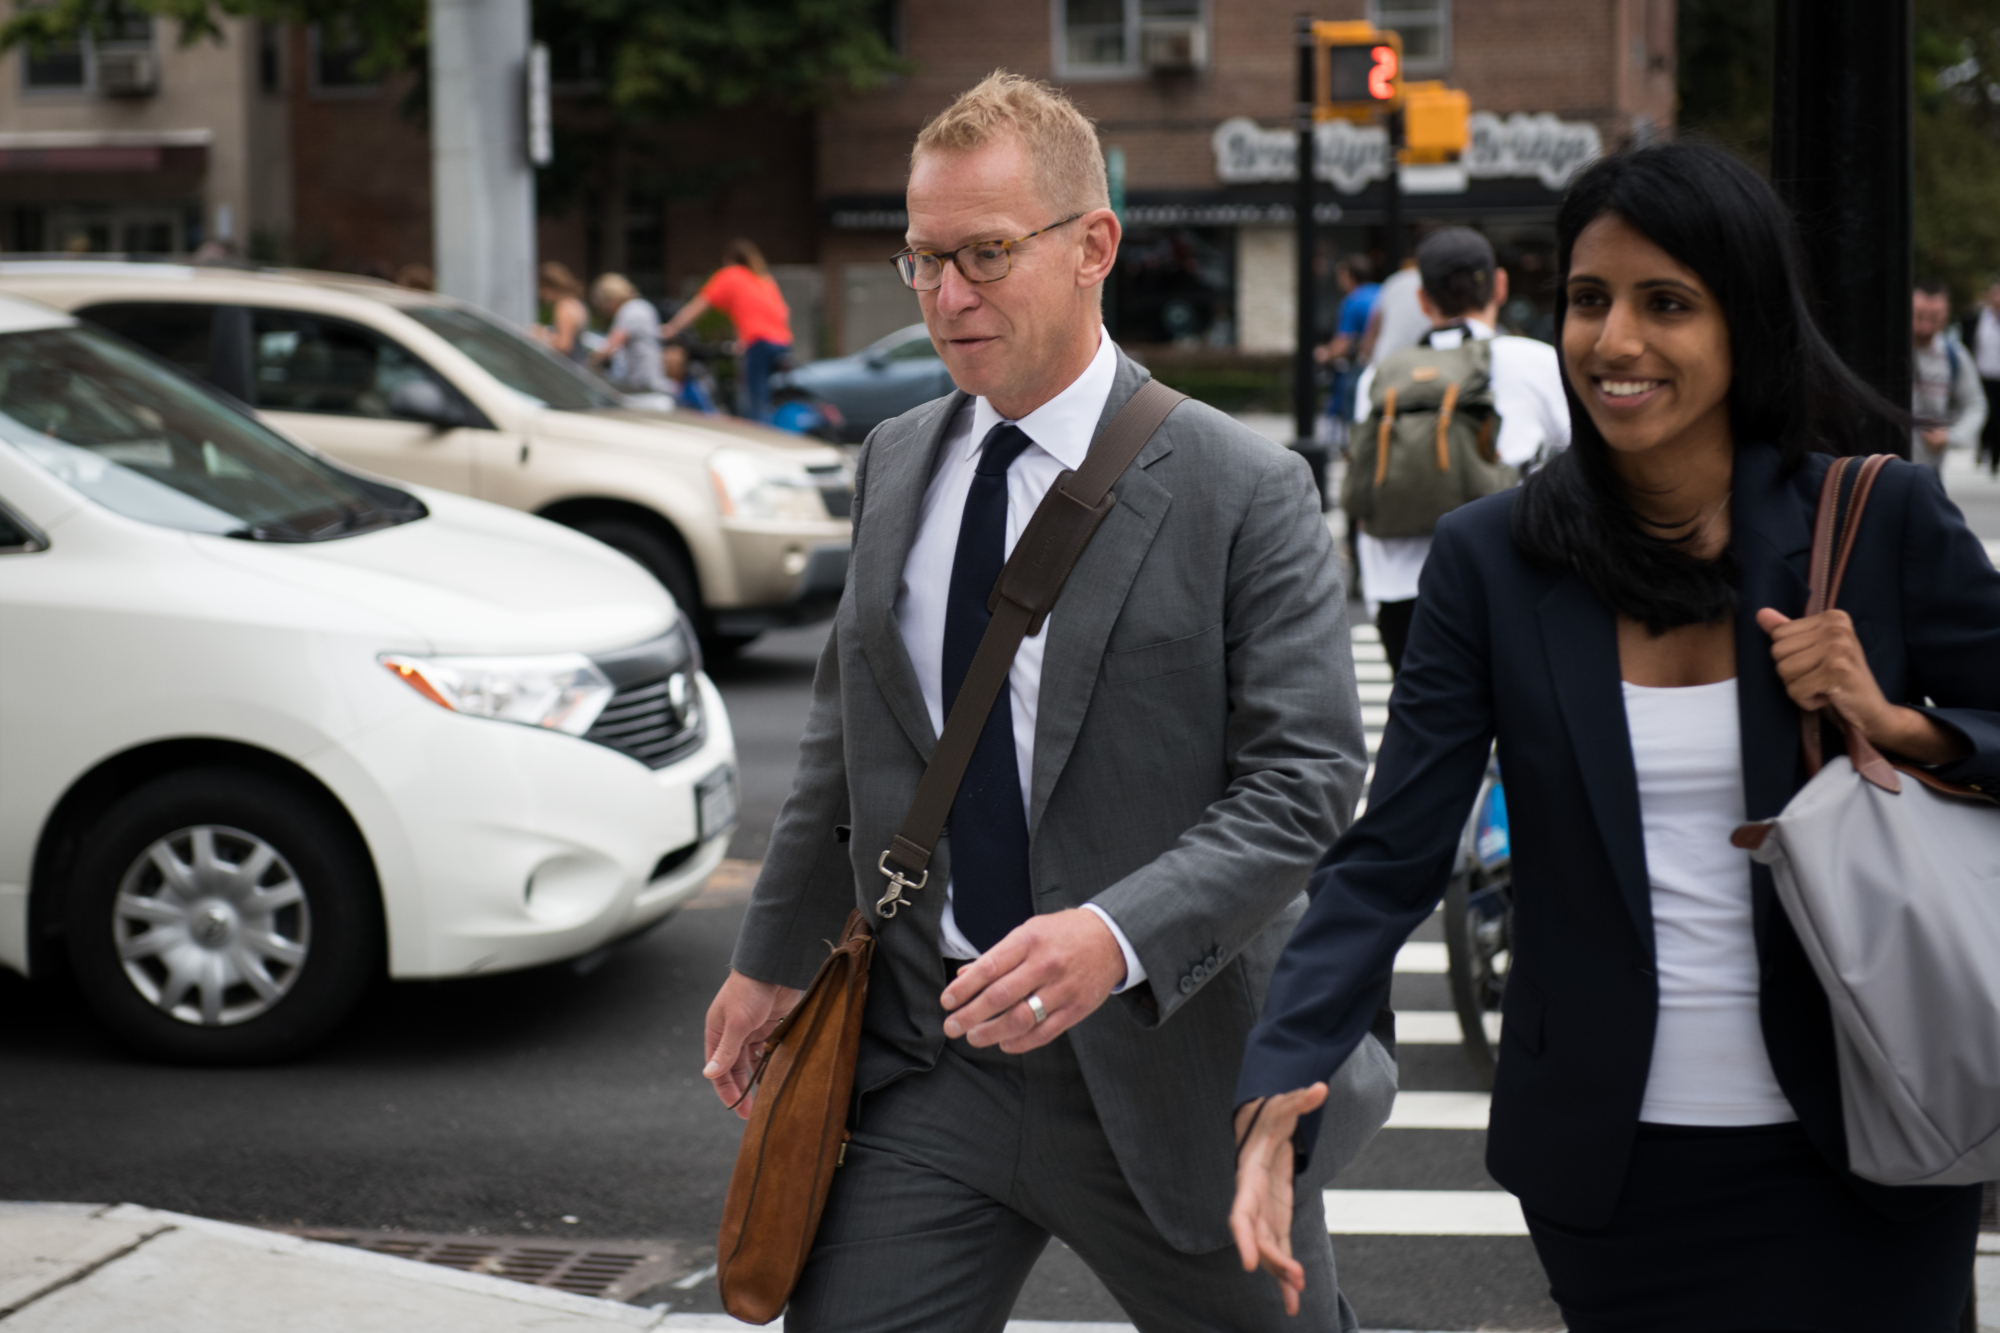 Johnson outside court in New York on Sept. 18, 2017.
